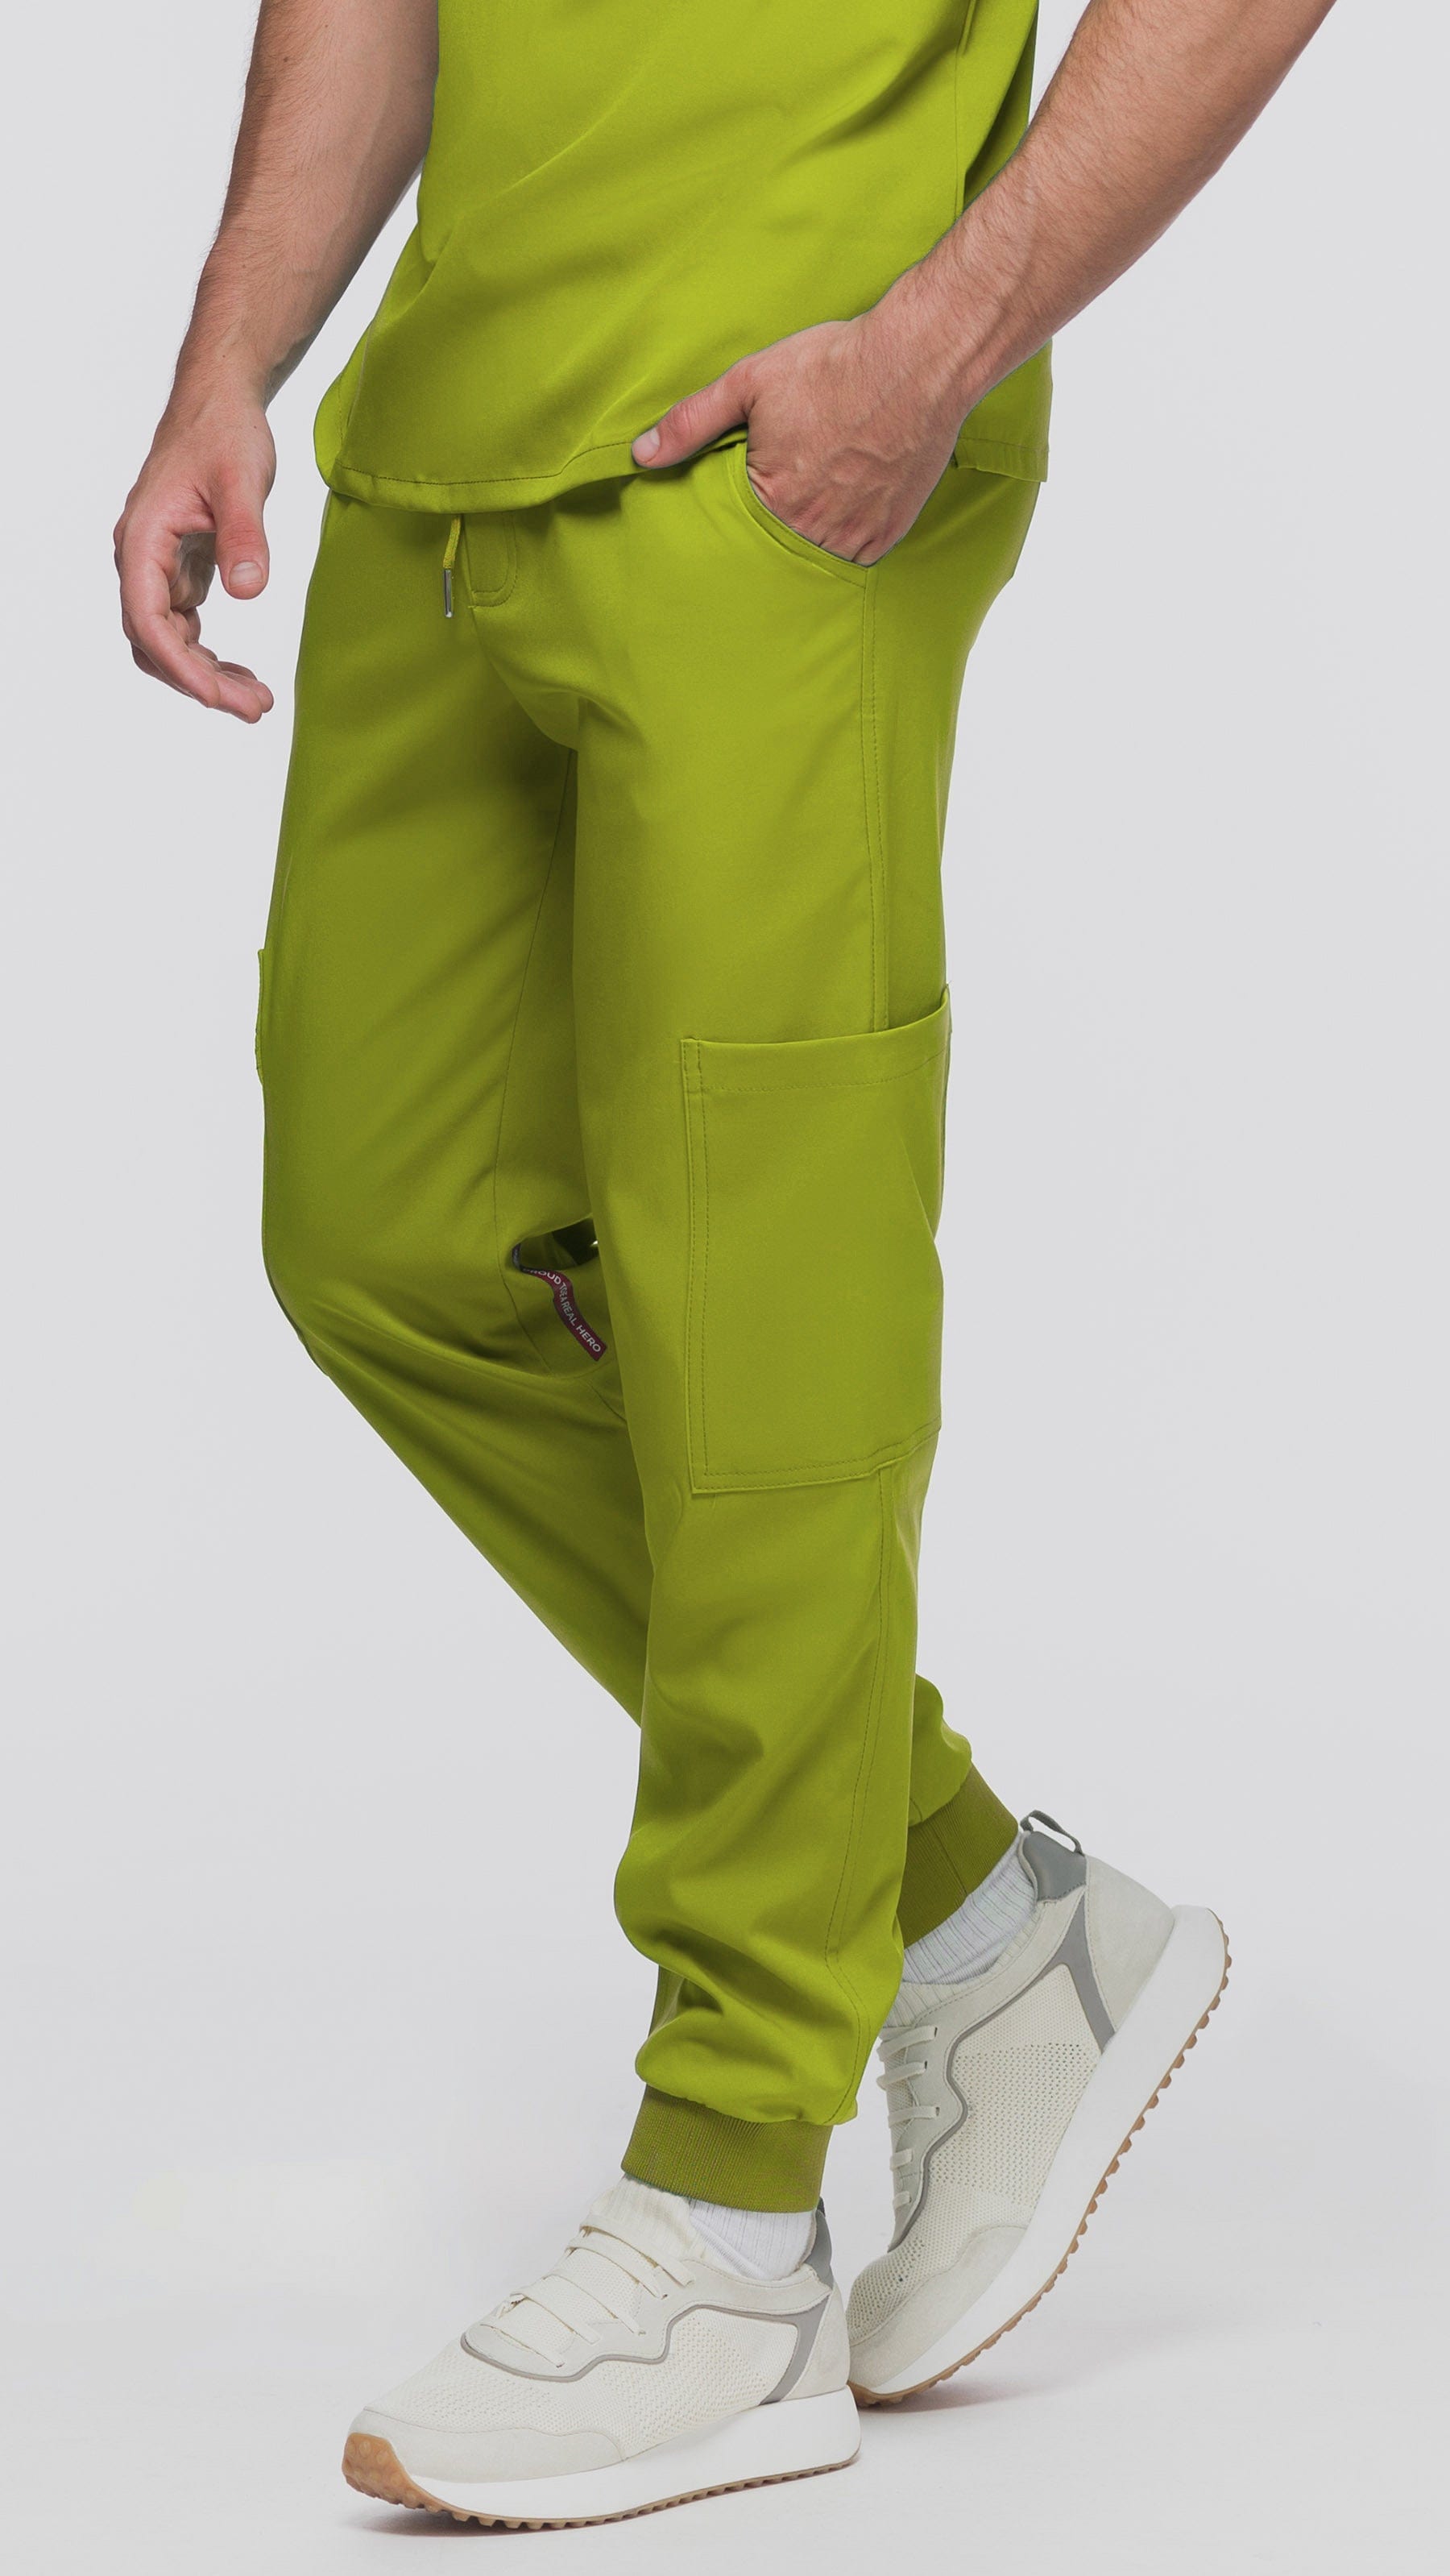 Kanaus® Pants Beyond Green Apple | Caballero - Kanaus